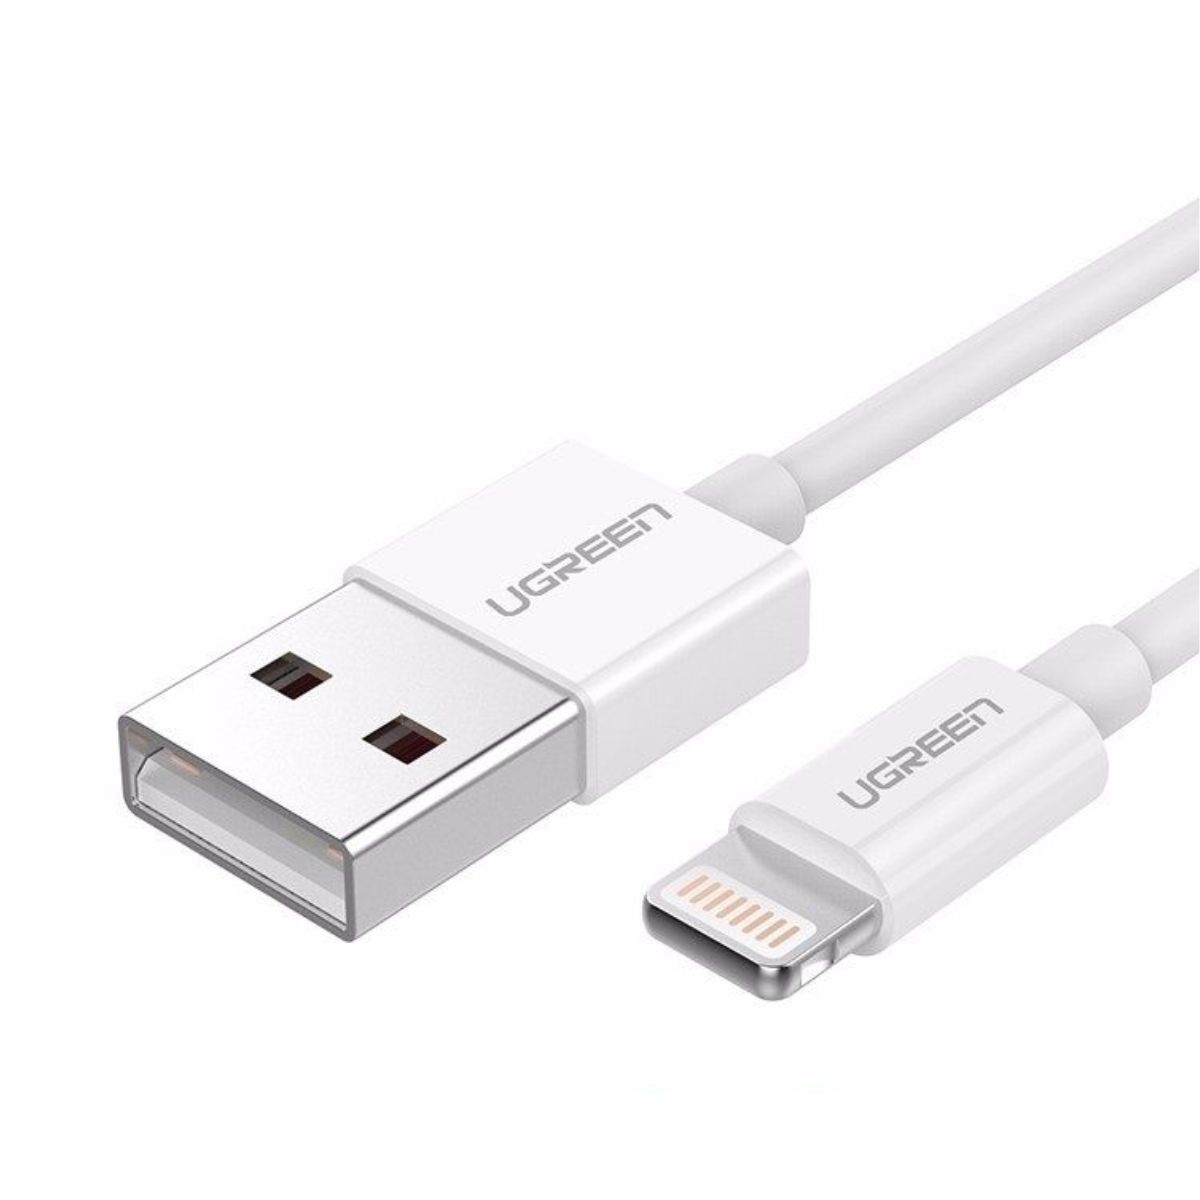 Cáp sạc nhanh 50cm USB-A Male to Lightning Ugreen 80313 US155 màu trắng, hỗ trợ sạc nhanh 2,4A